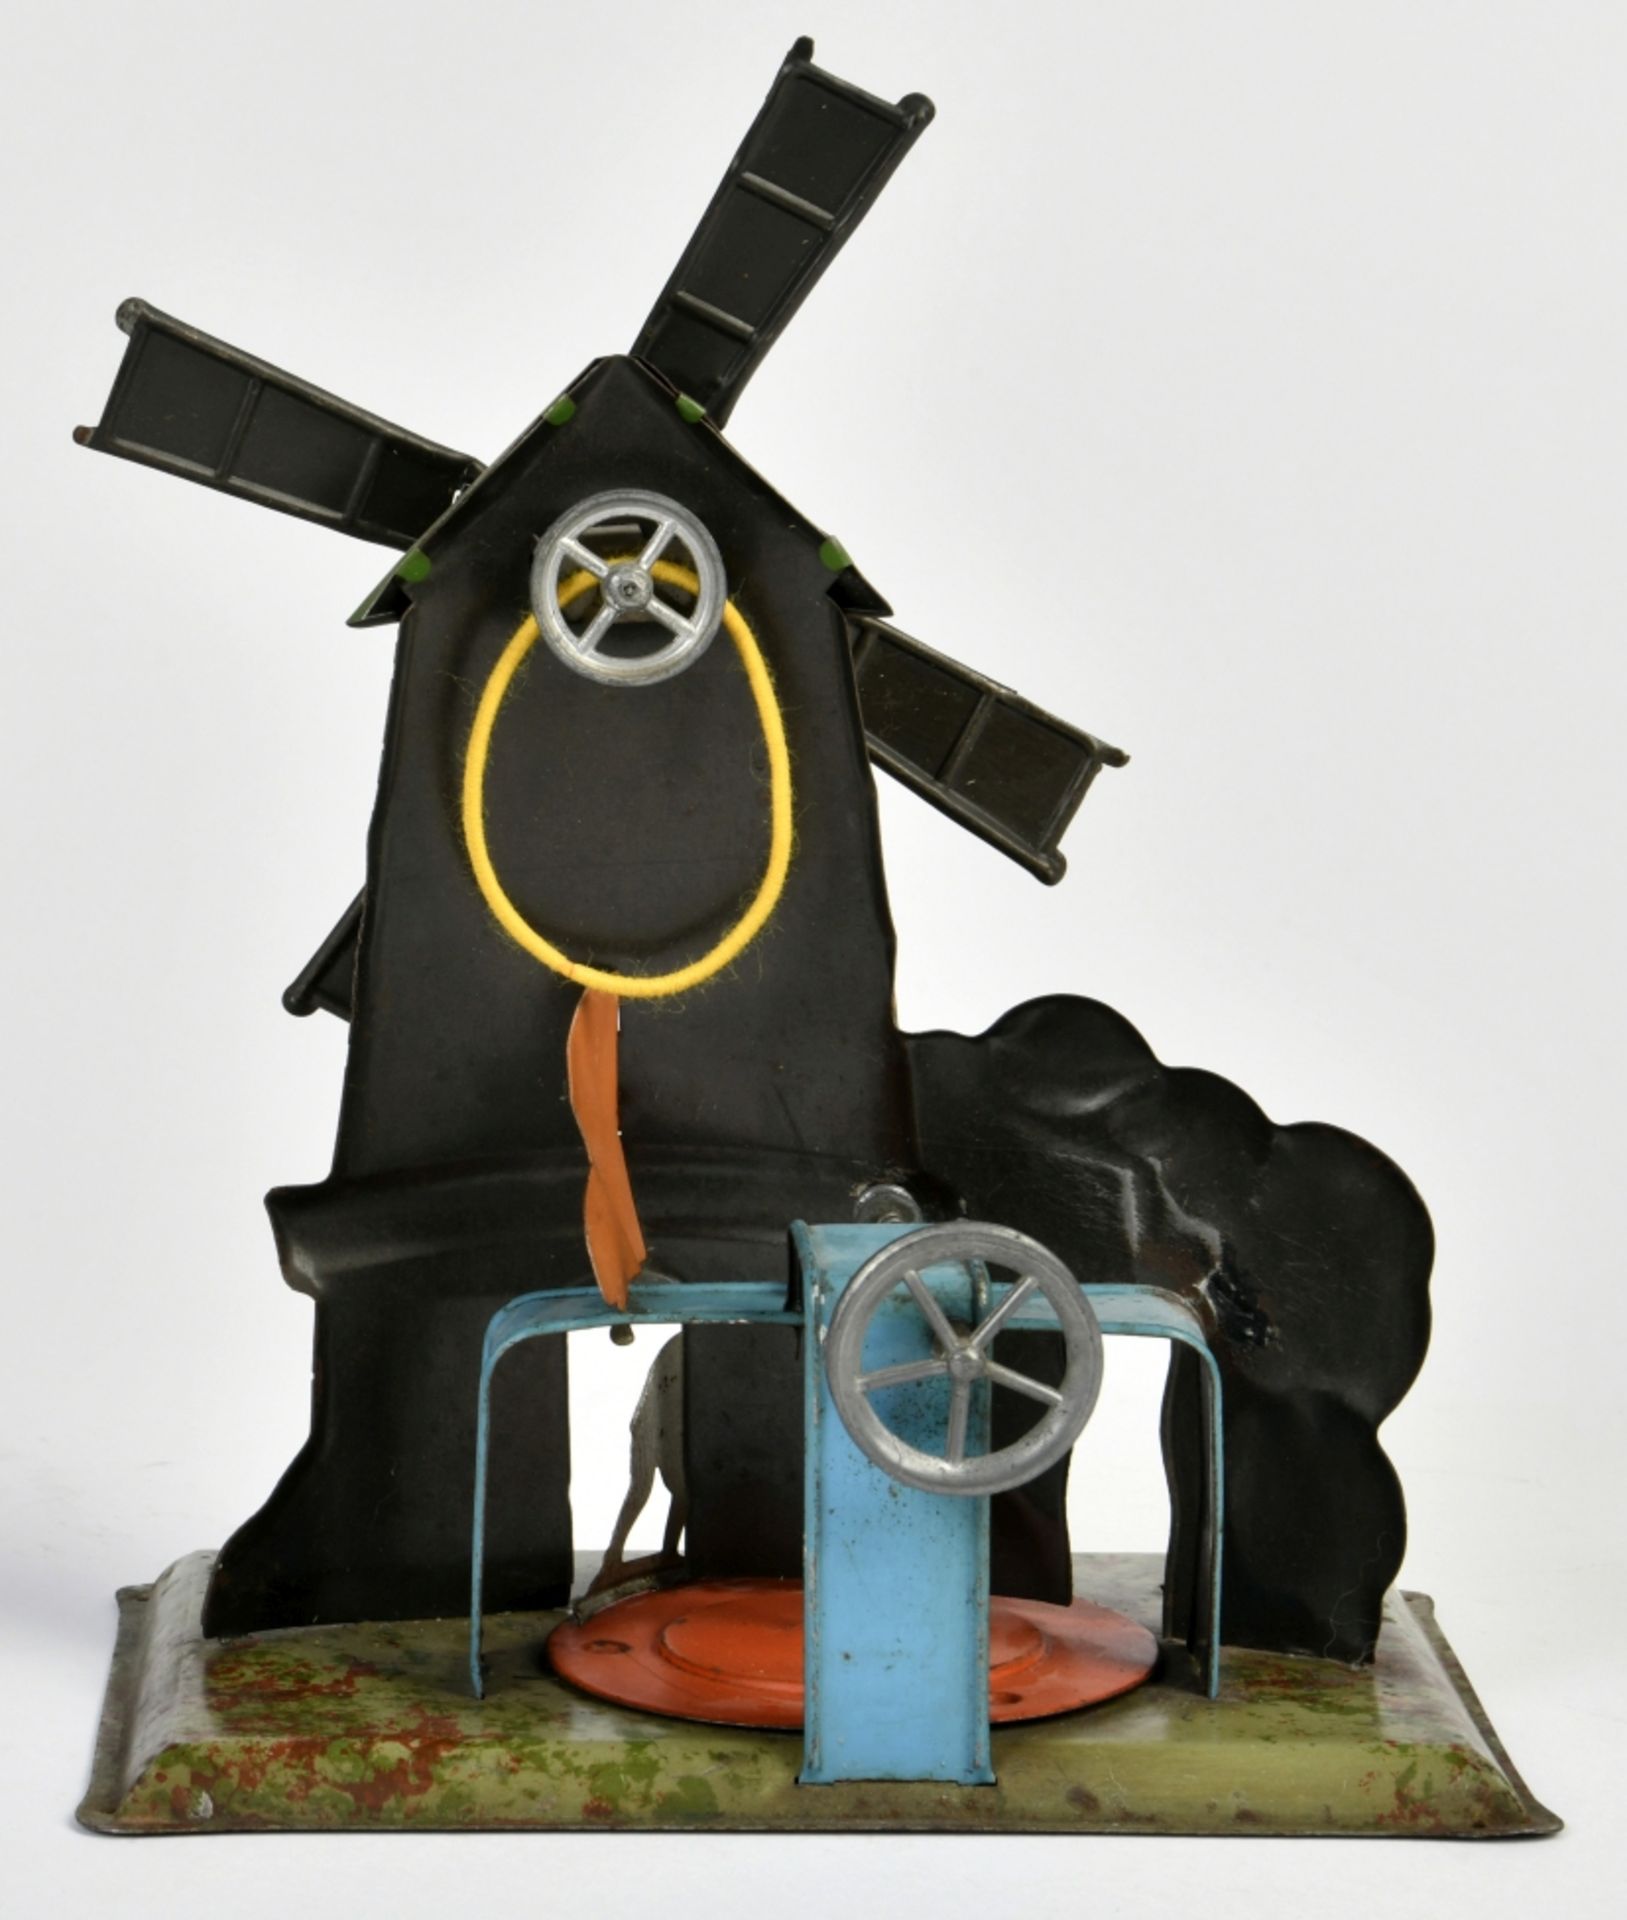 Kraus, Antriebsmodell Windmühle - Bild 2 aus 2